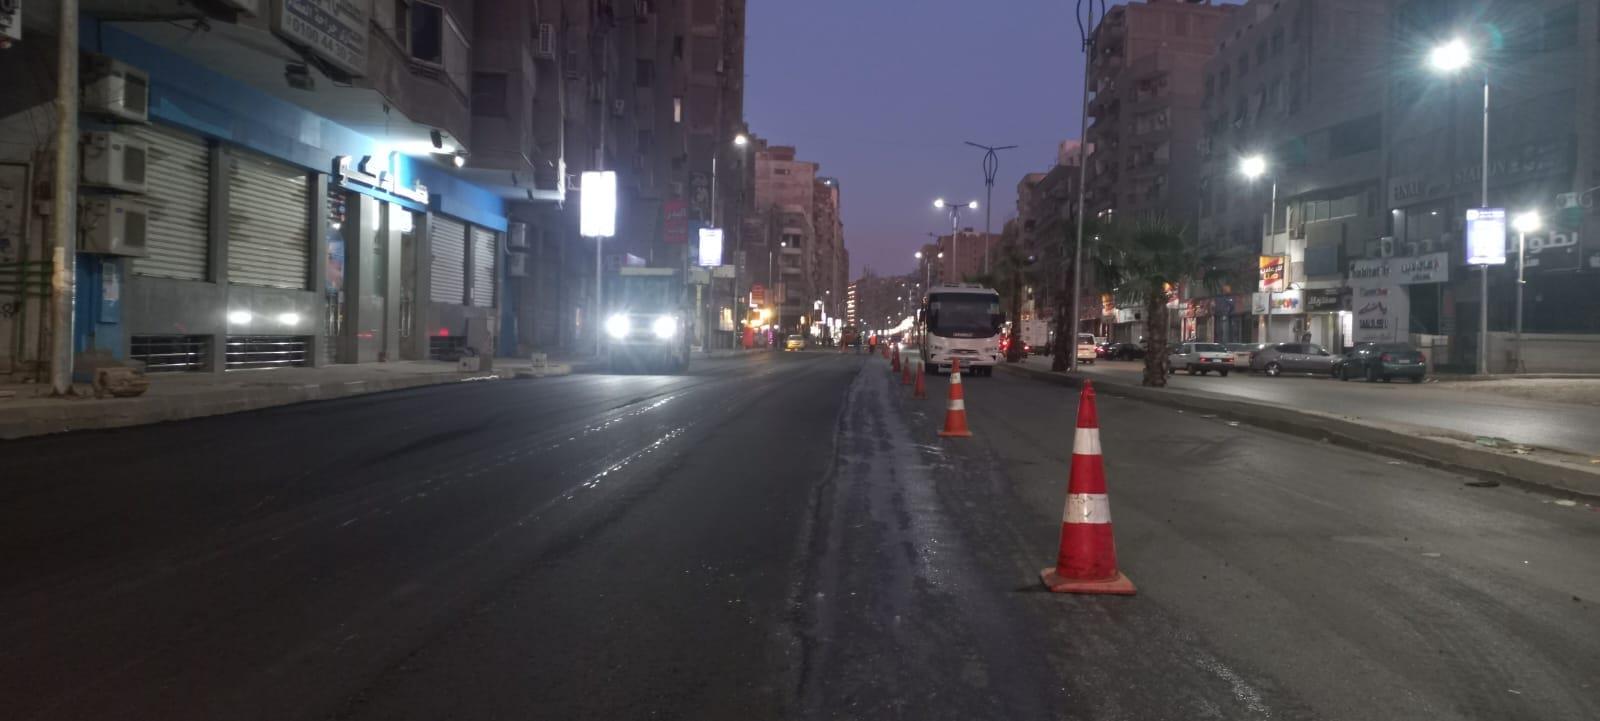 ترصد استكمال رصف شارع الملك فيصل أسفل الدائري حتى المنصورية (1)